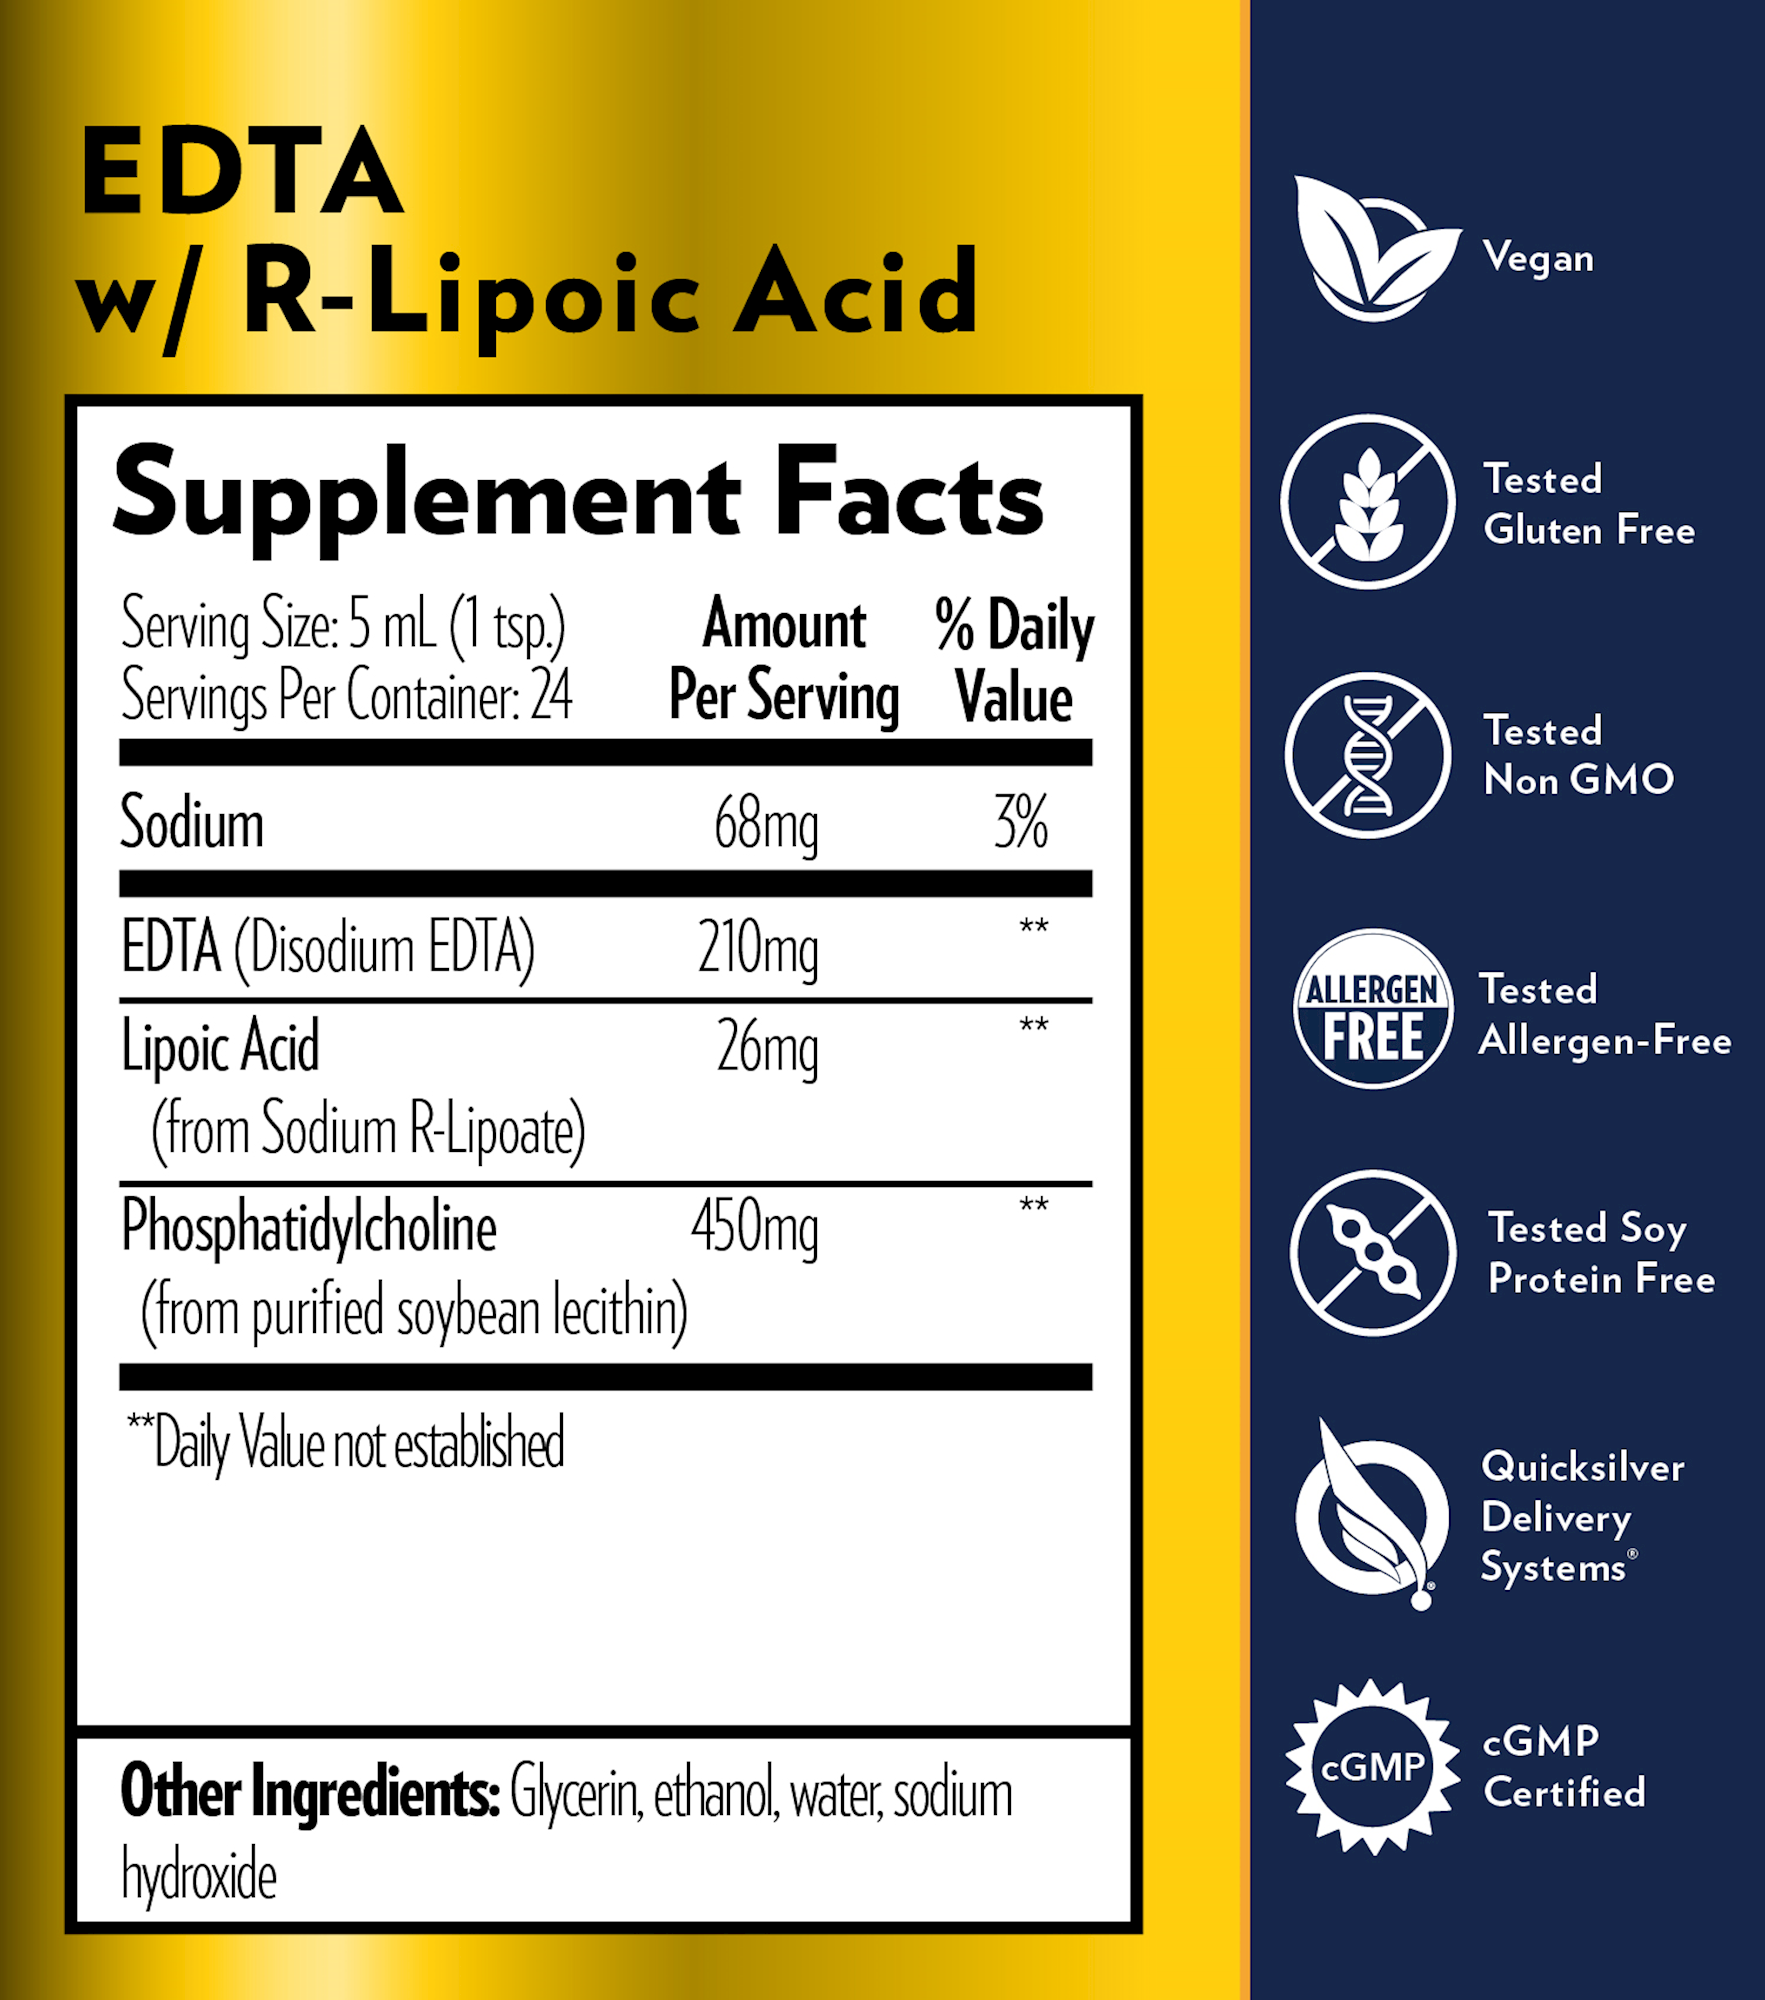 EDTA with R-Lipoic Acid